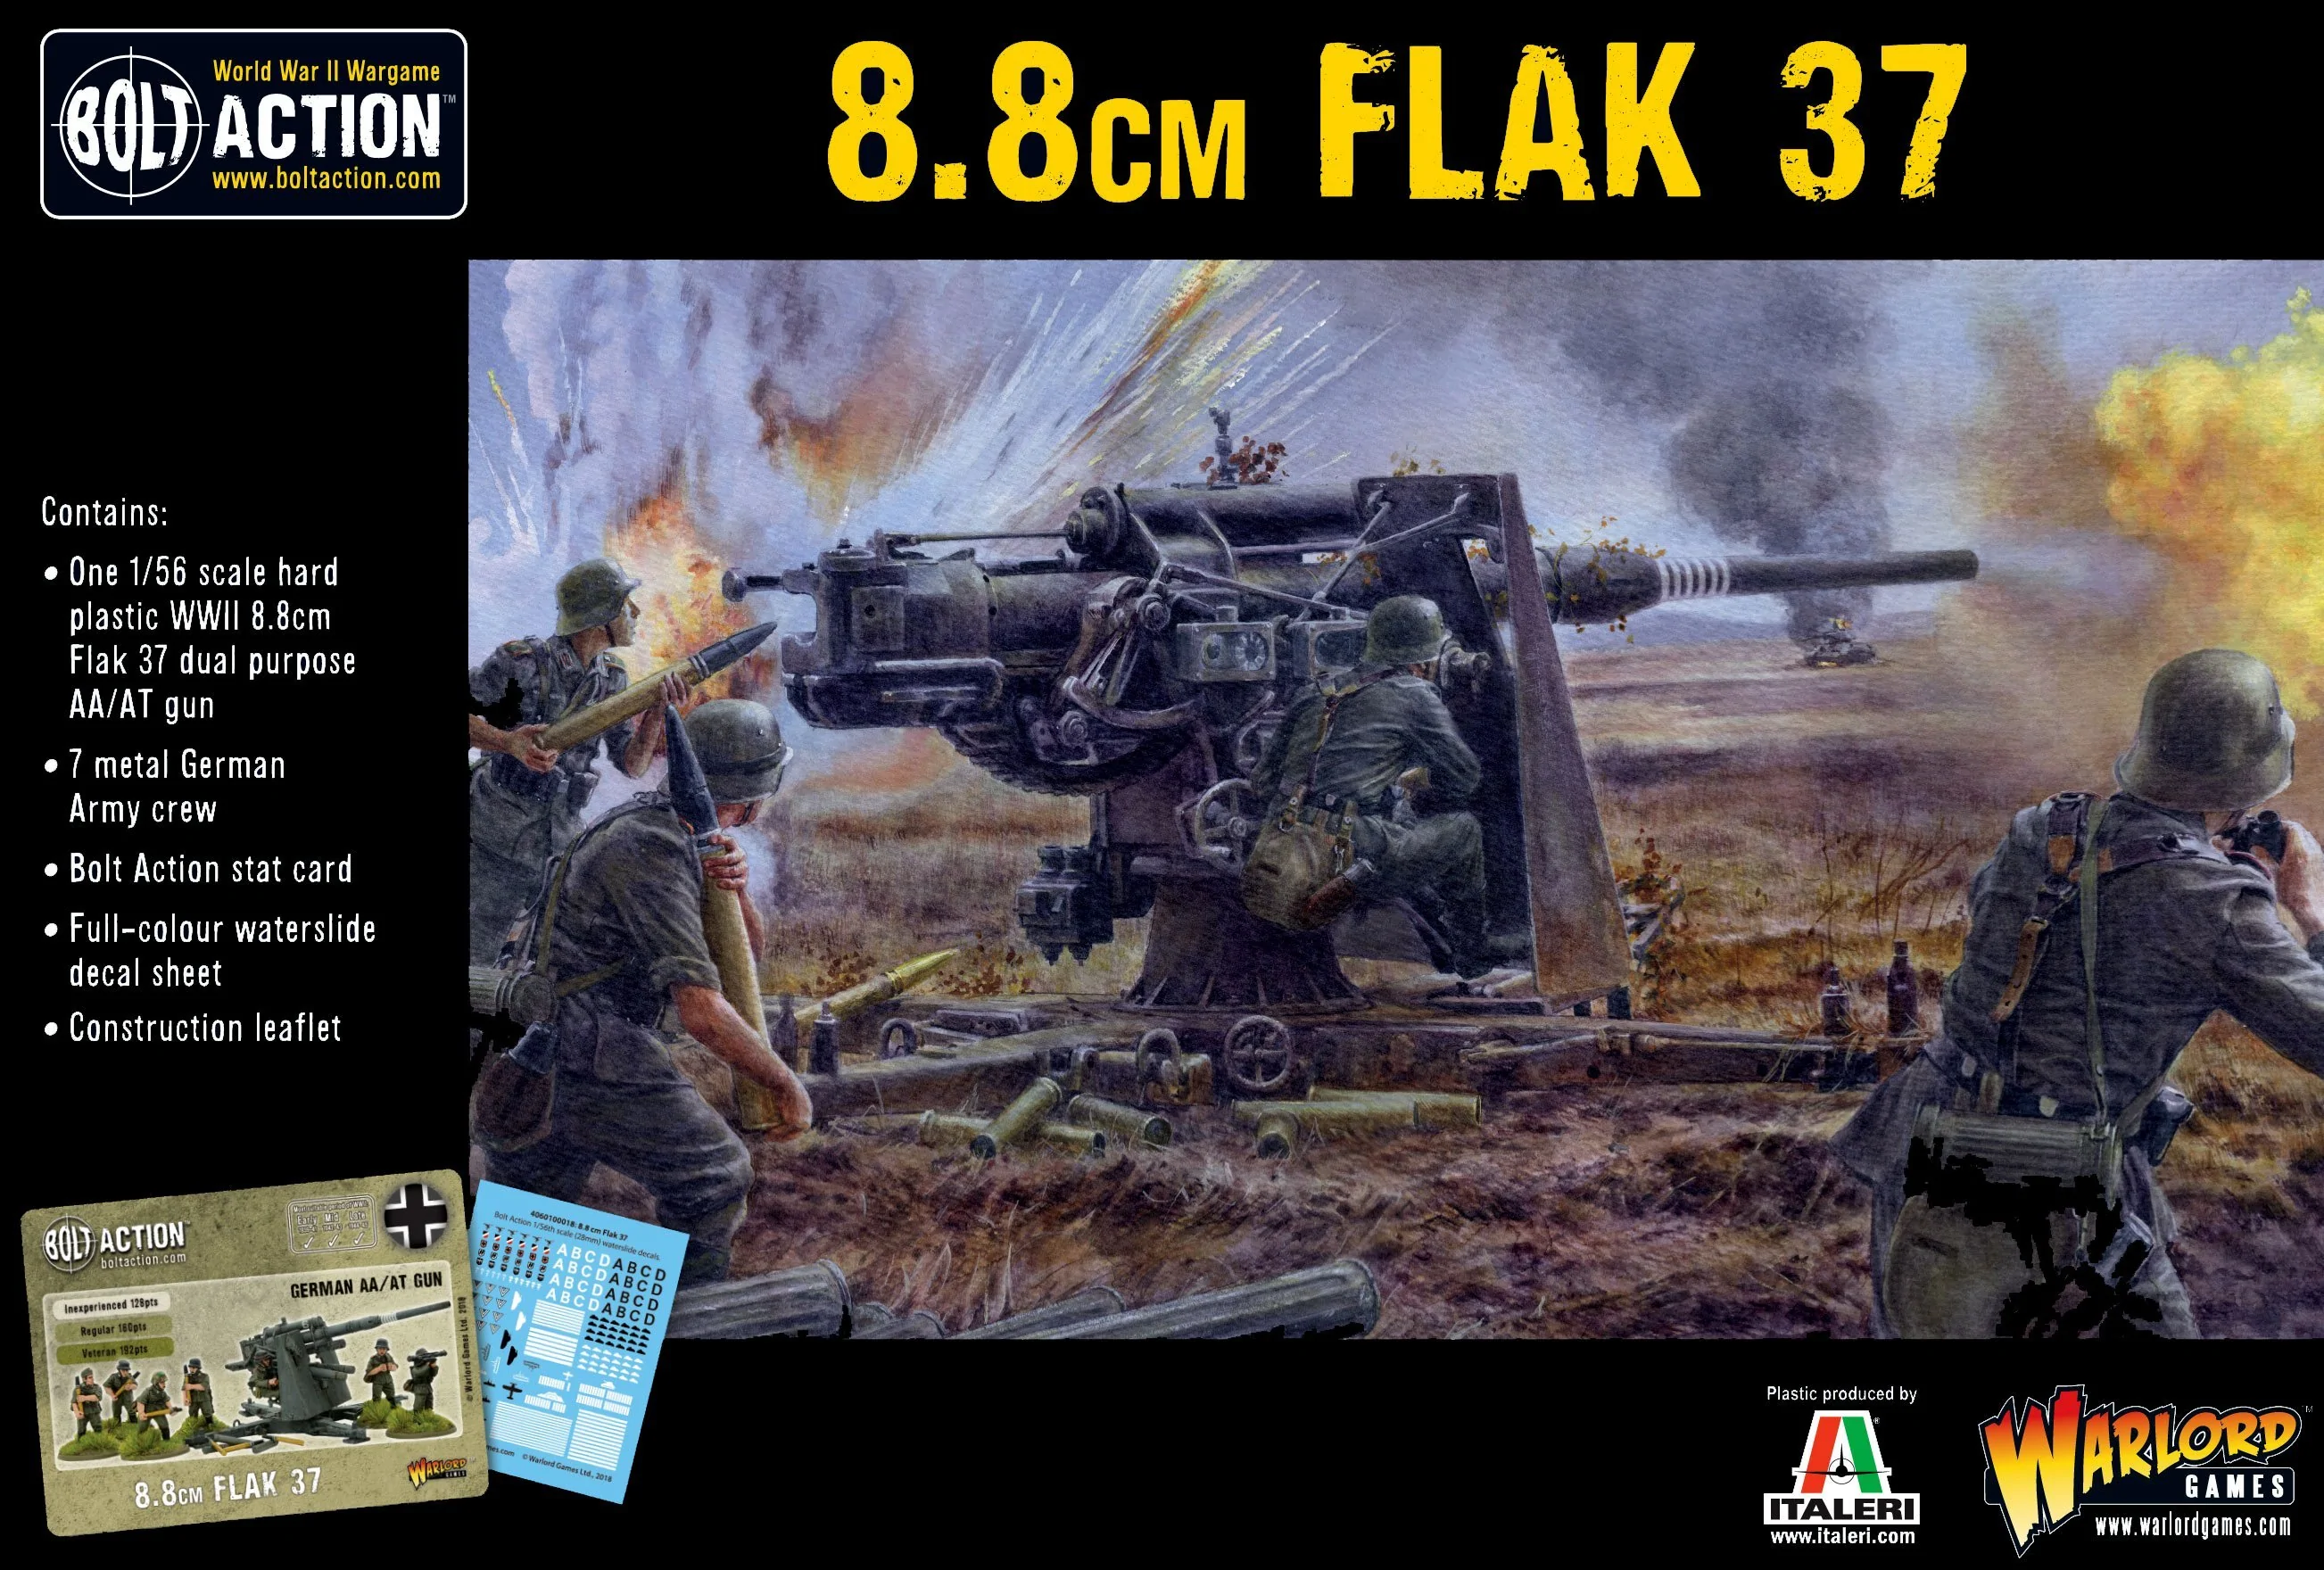 402012026-8.8cm-flak-37-box-front